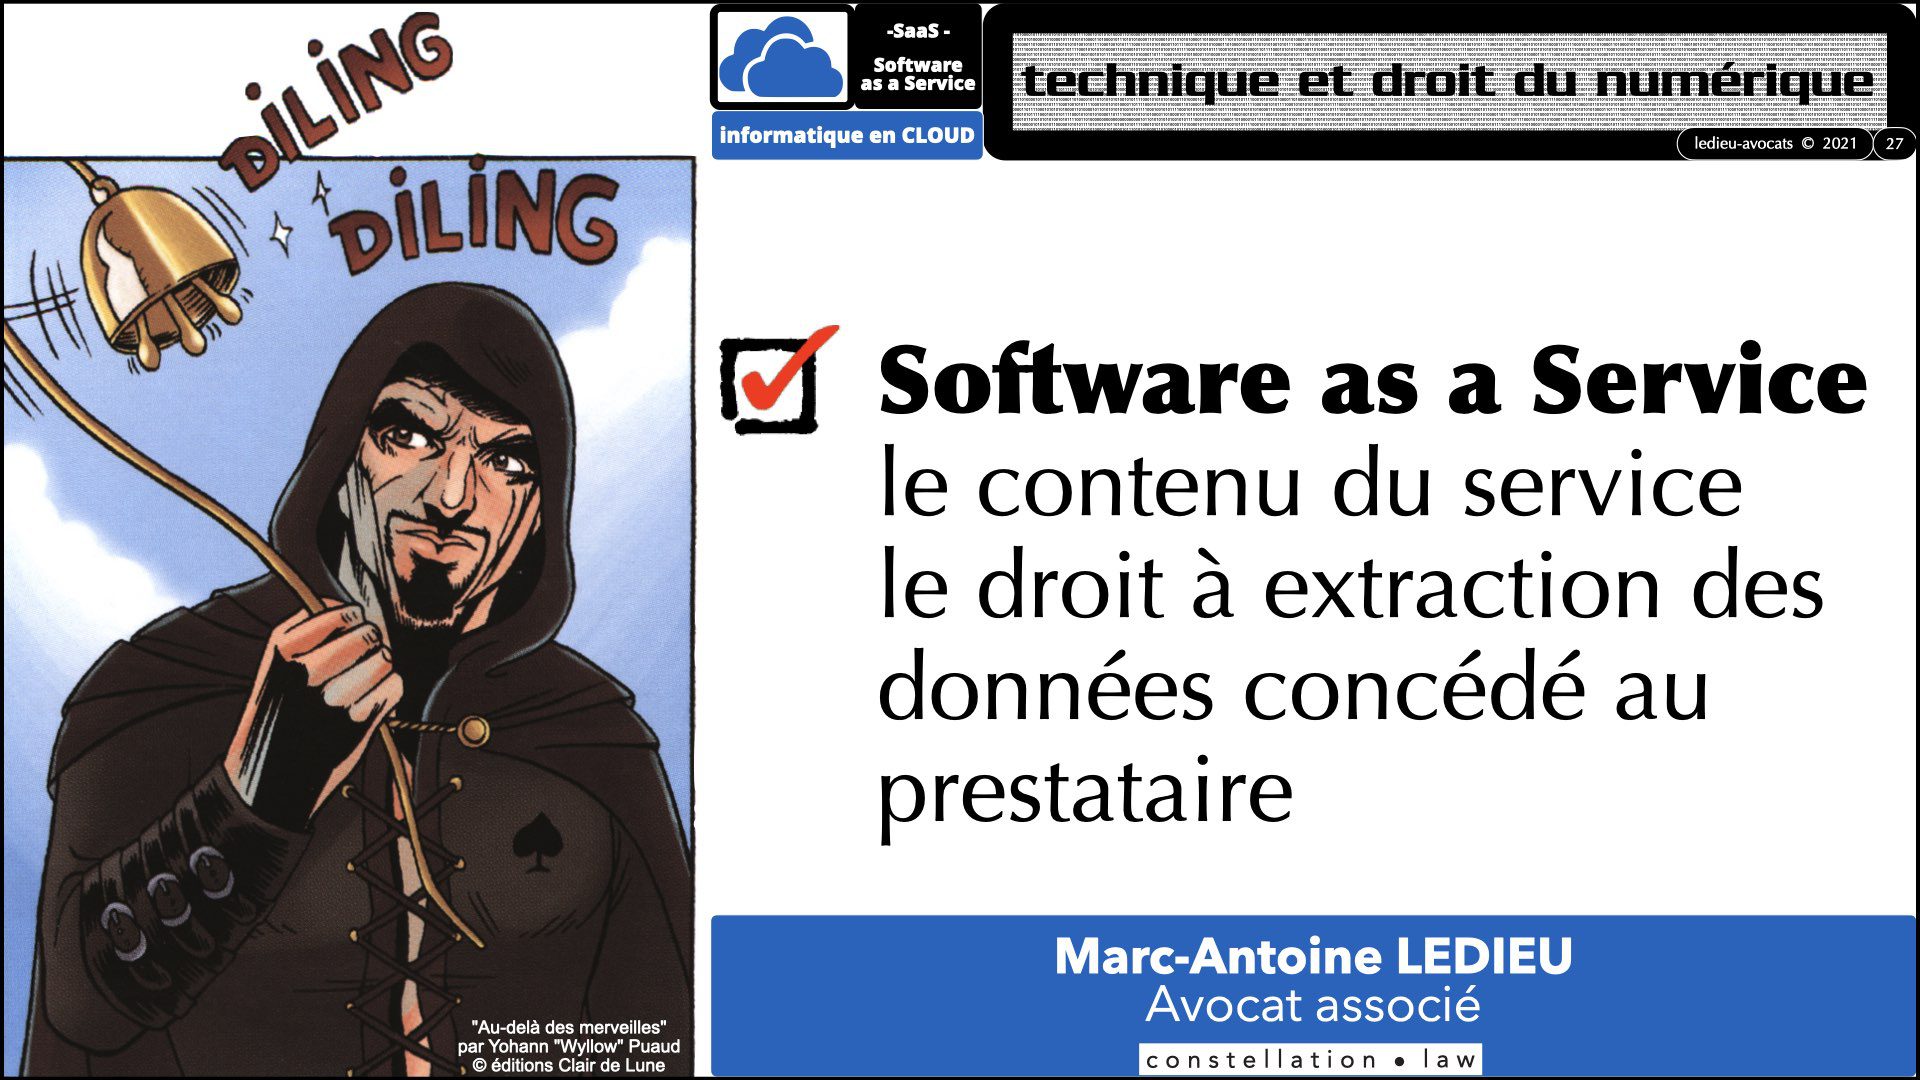 343 service LOGICIEL SaaS Software-as-a-Service cloud computing © Ledieu-Avocats technique droit numerique 30-08-2021.027